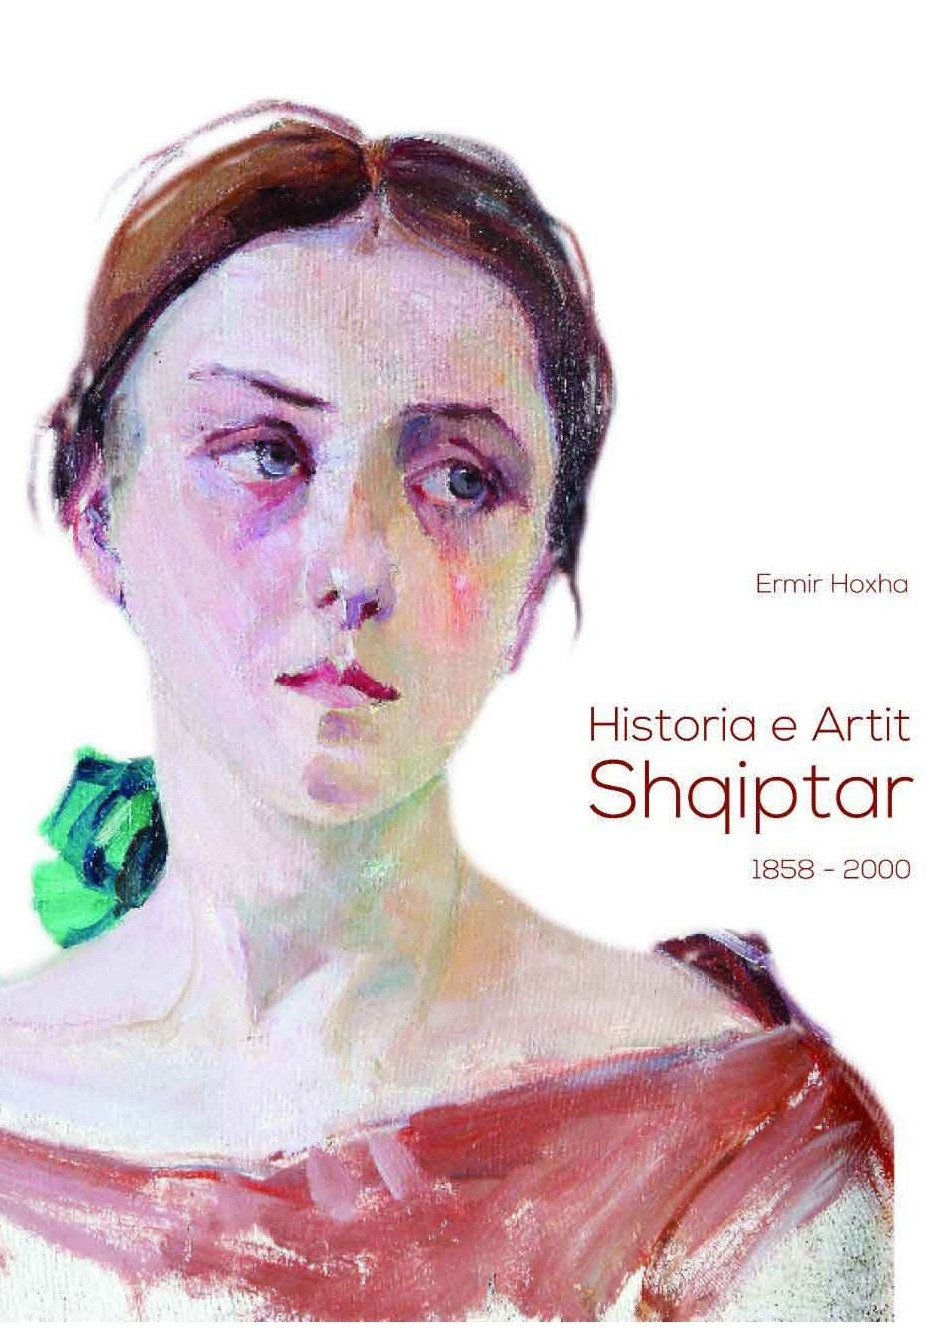 Historia e artit shqiptar 1858 - 2000